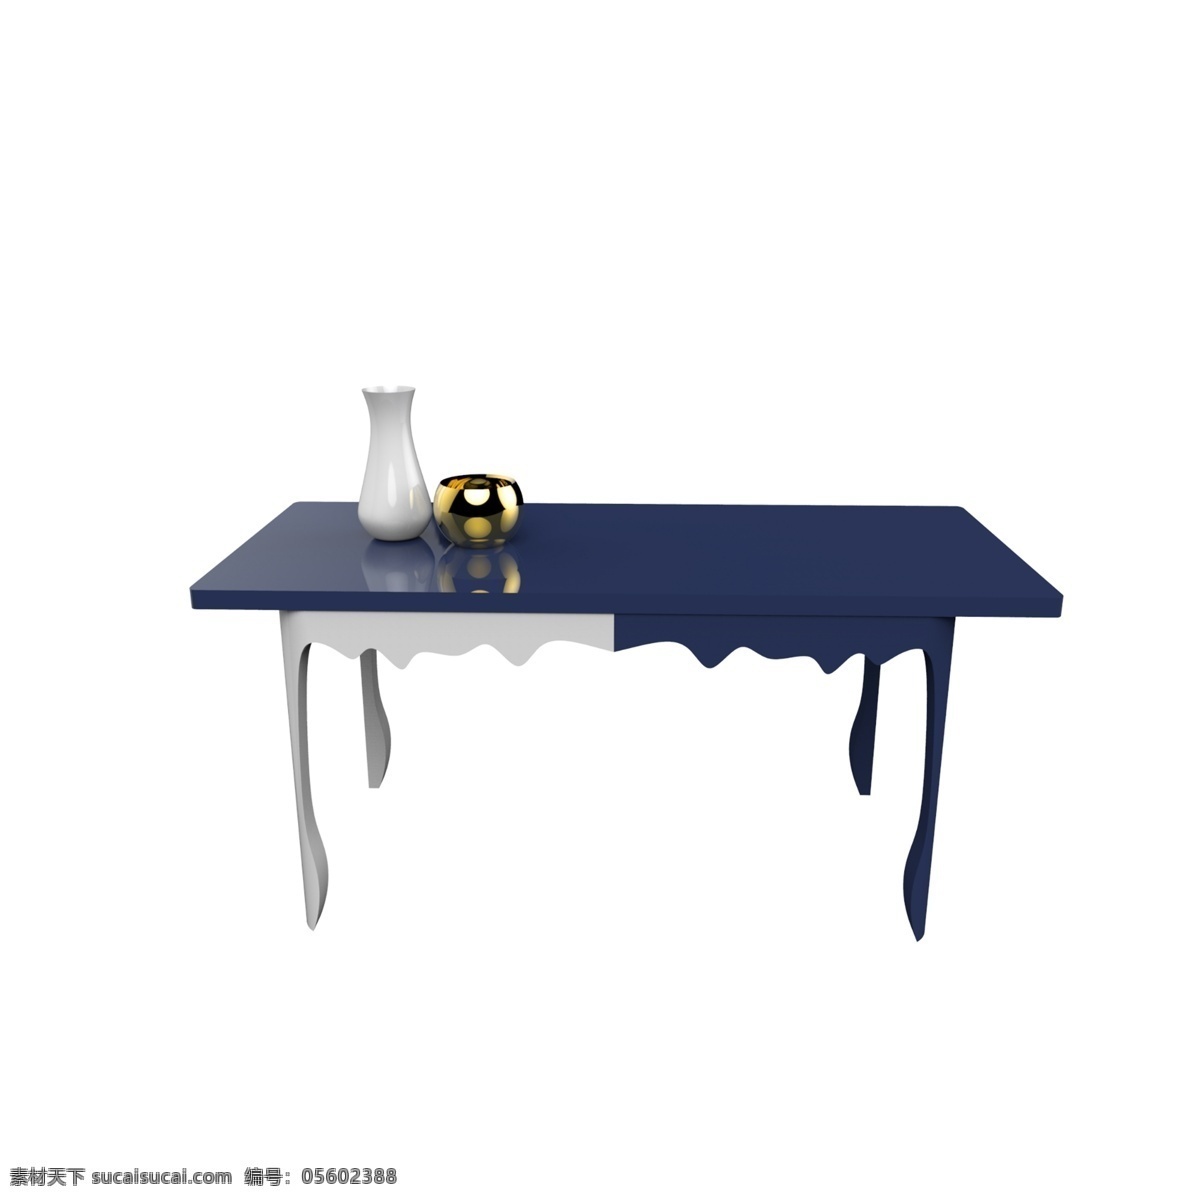 蓝白色 拼接 桌子 北欧 风 家居 小桌子 家居产品 柜体家居 家装节 简约小桌子 木制家具 实木家具